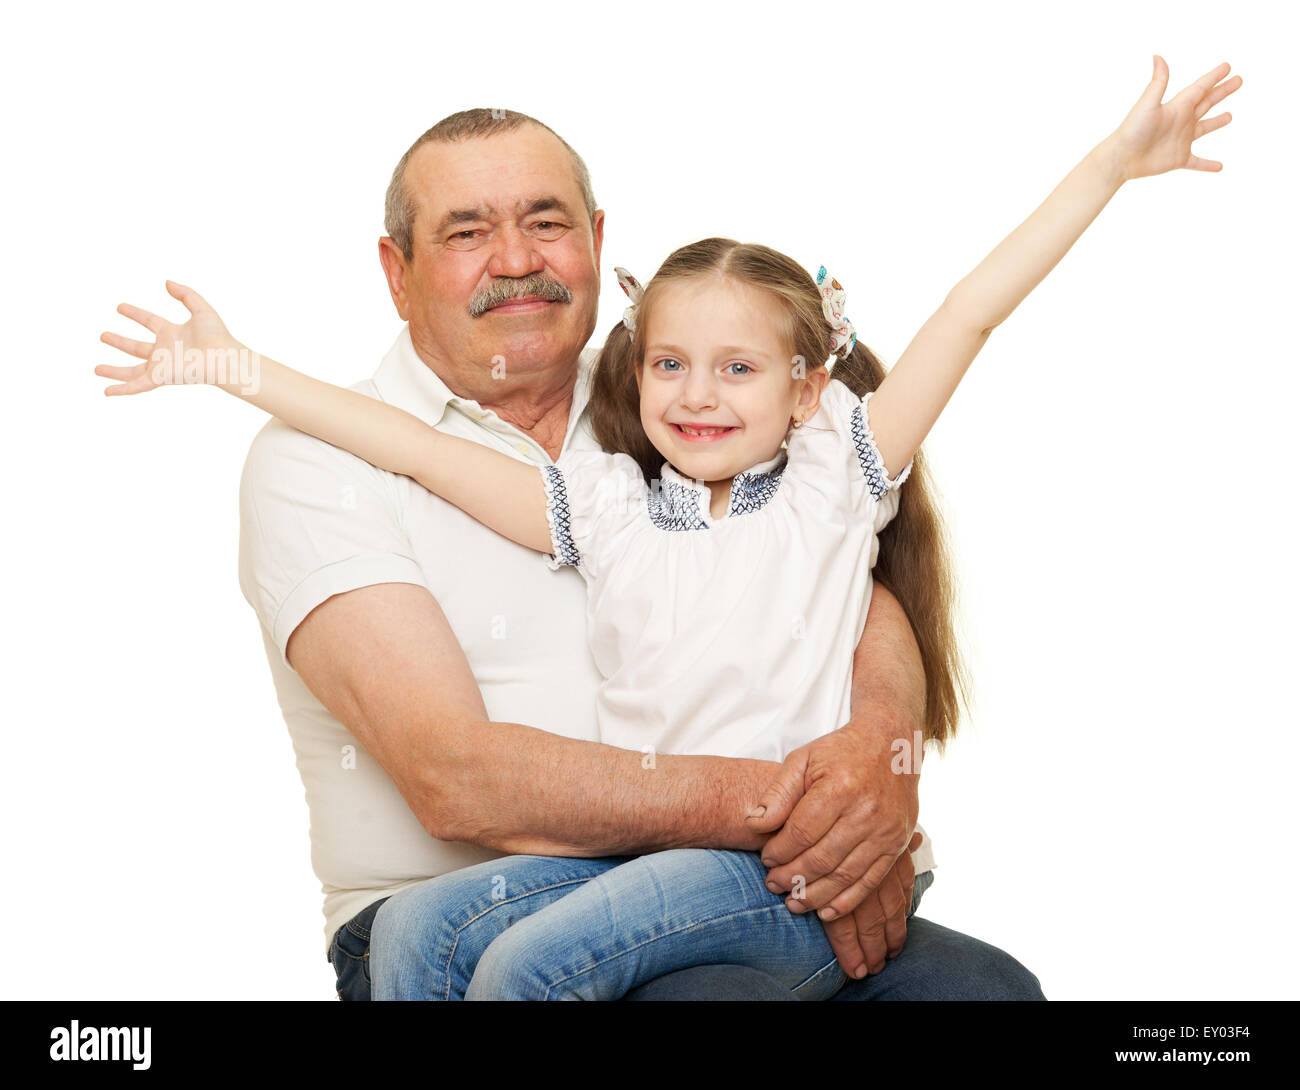 Grandfather and grandchildren portrait on white Stock Photo